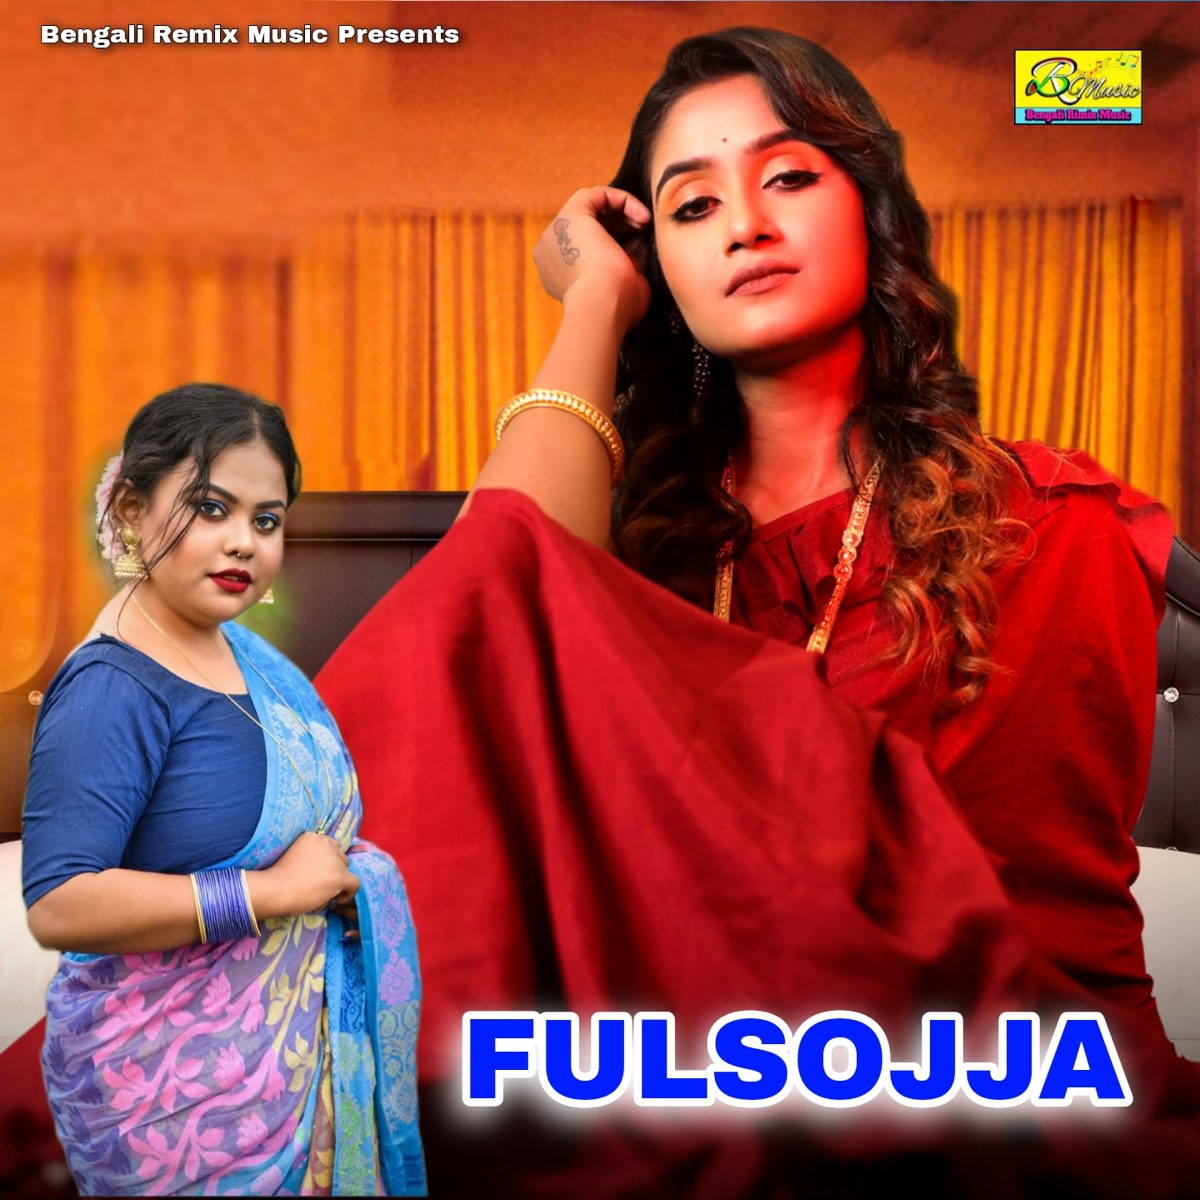 Bengali fulsojja